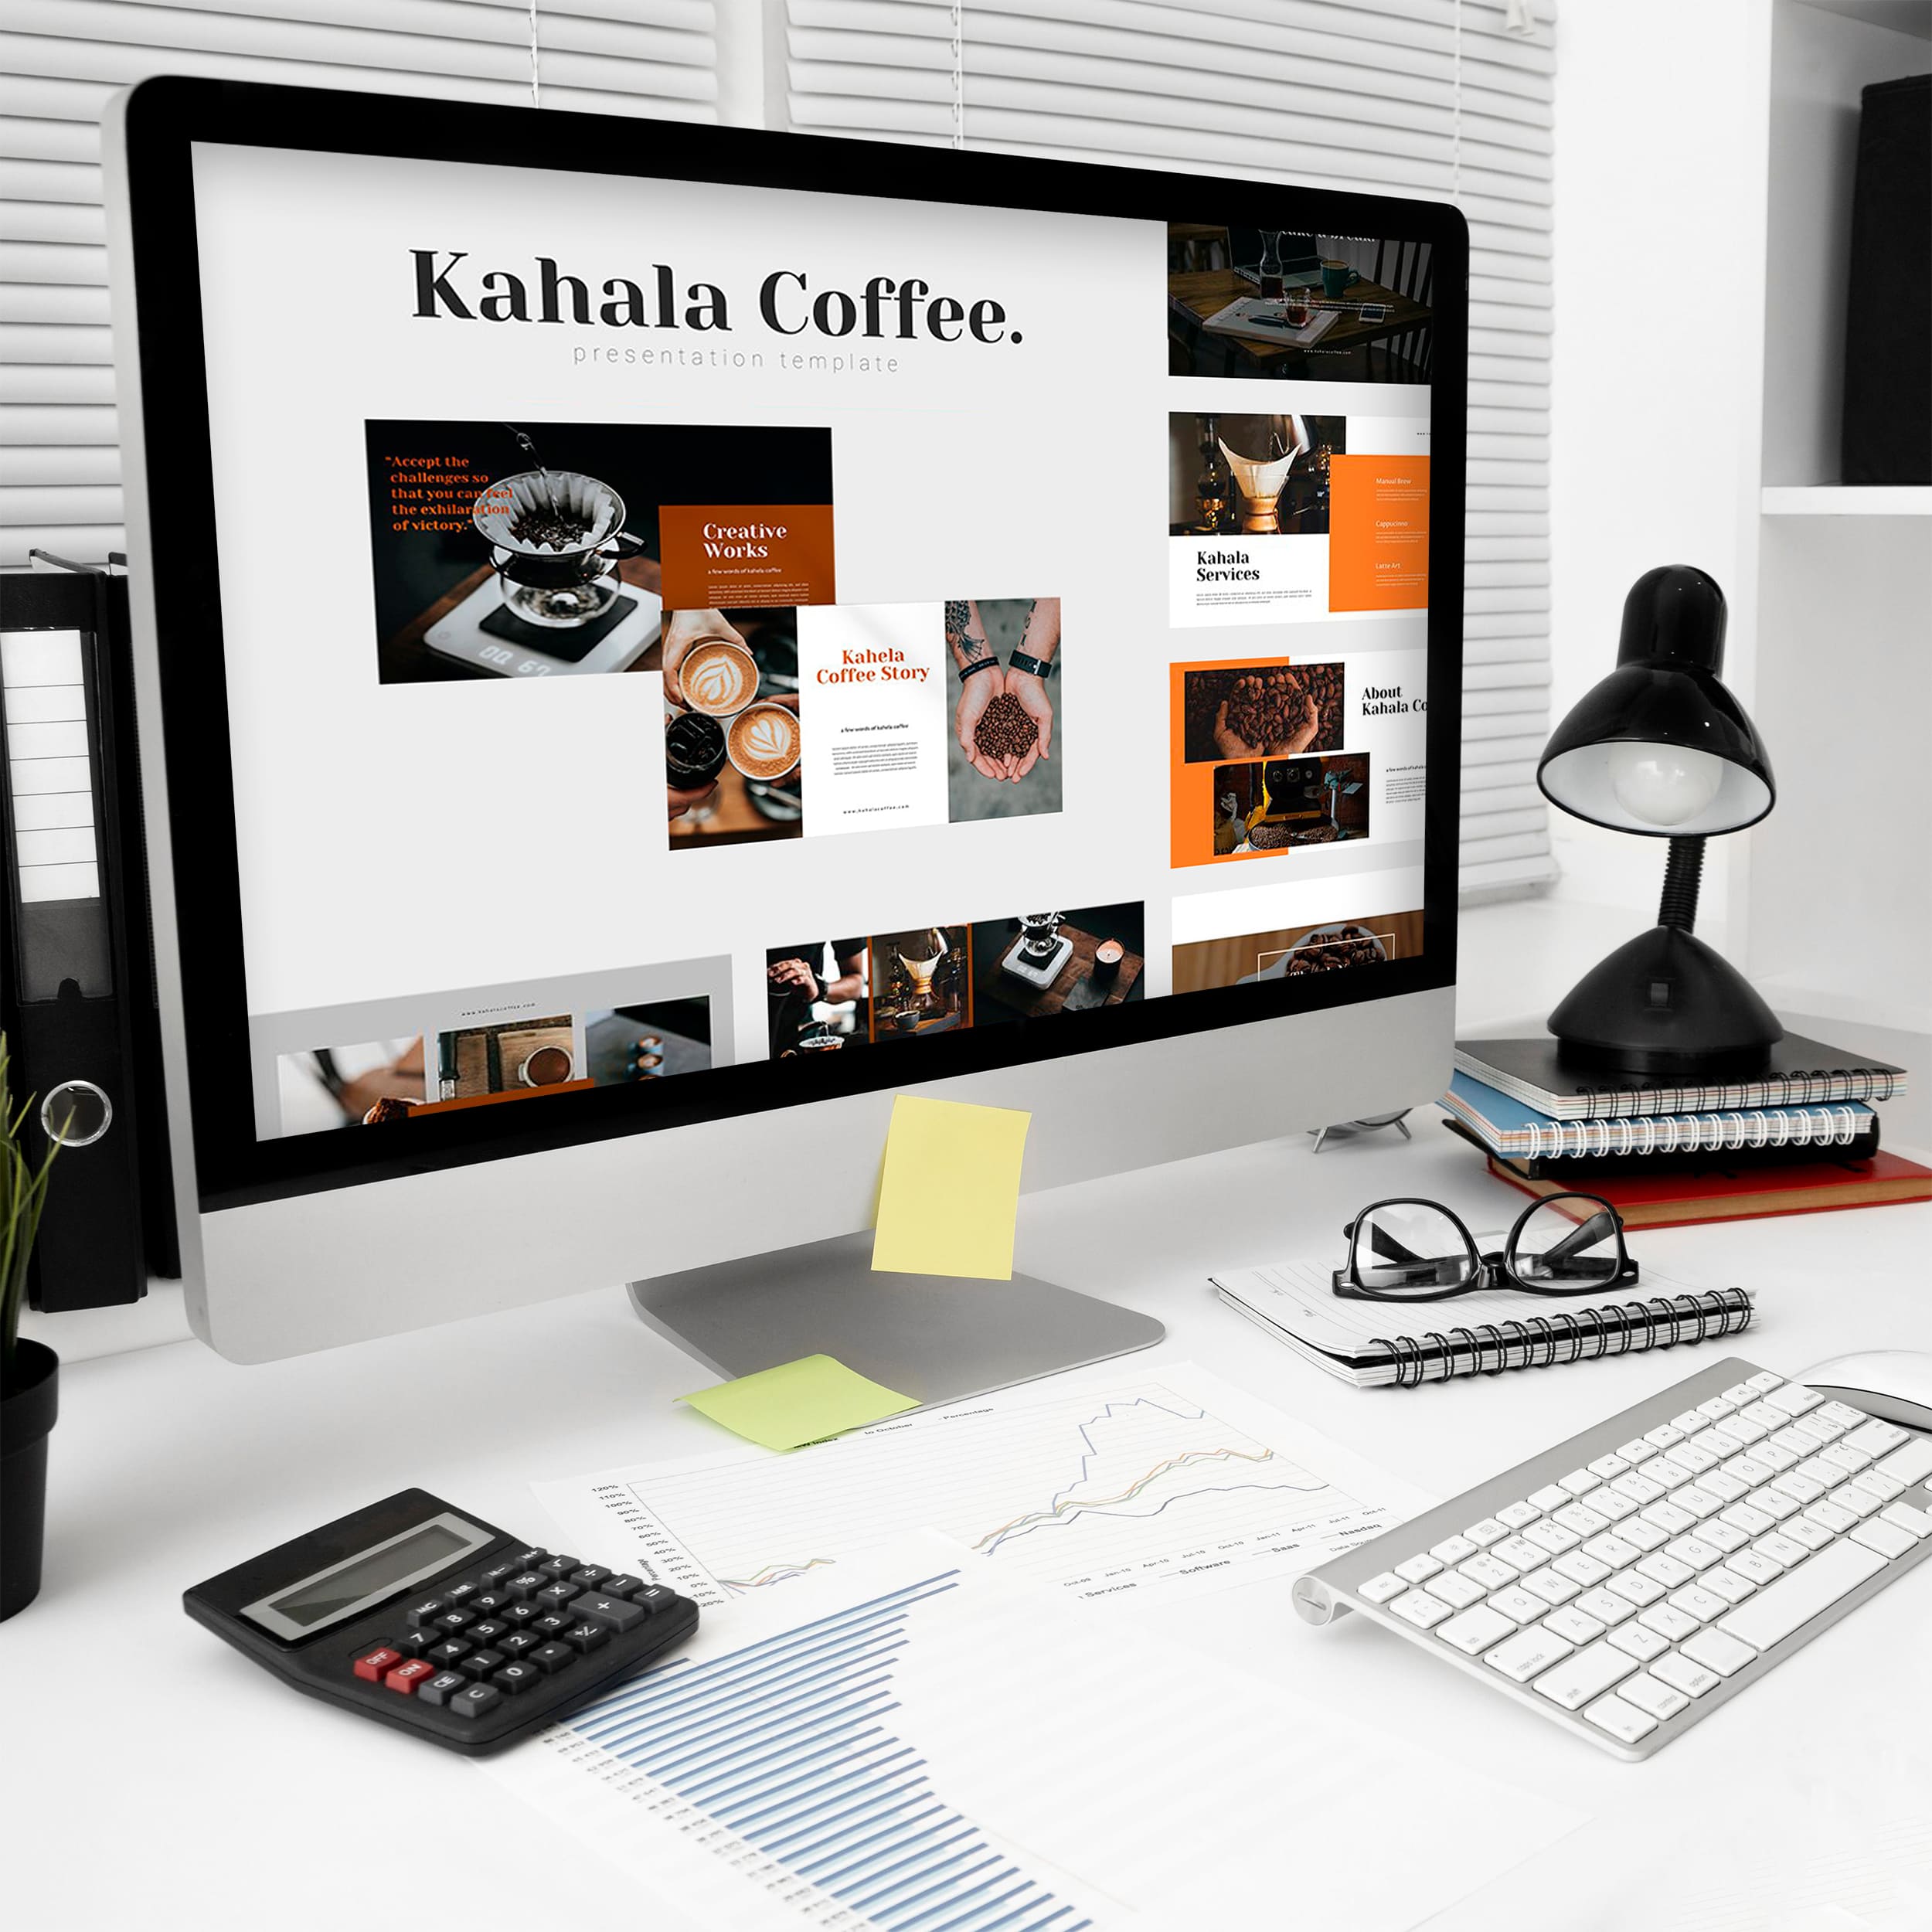 Kahala Coffee Google Slides - Mockup on Desktop.